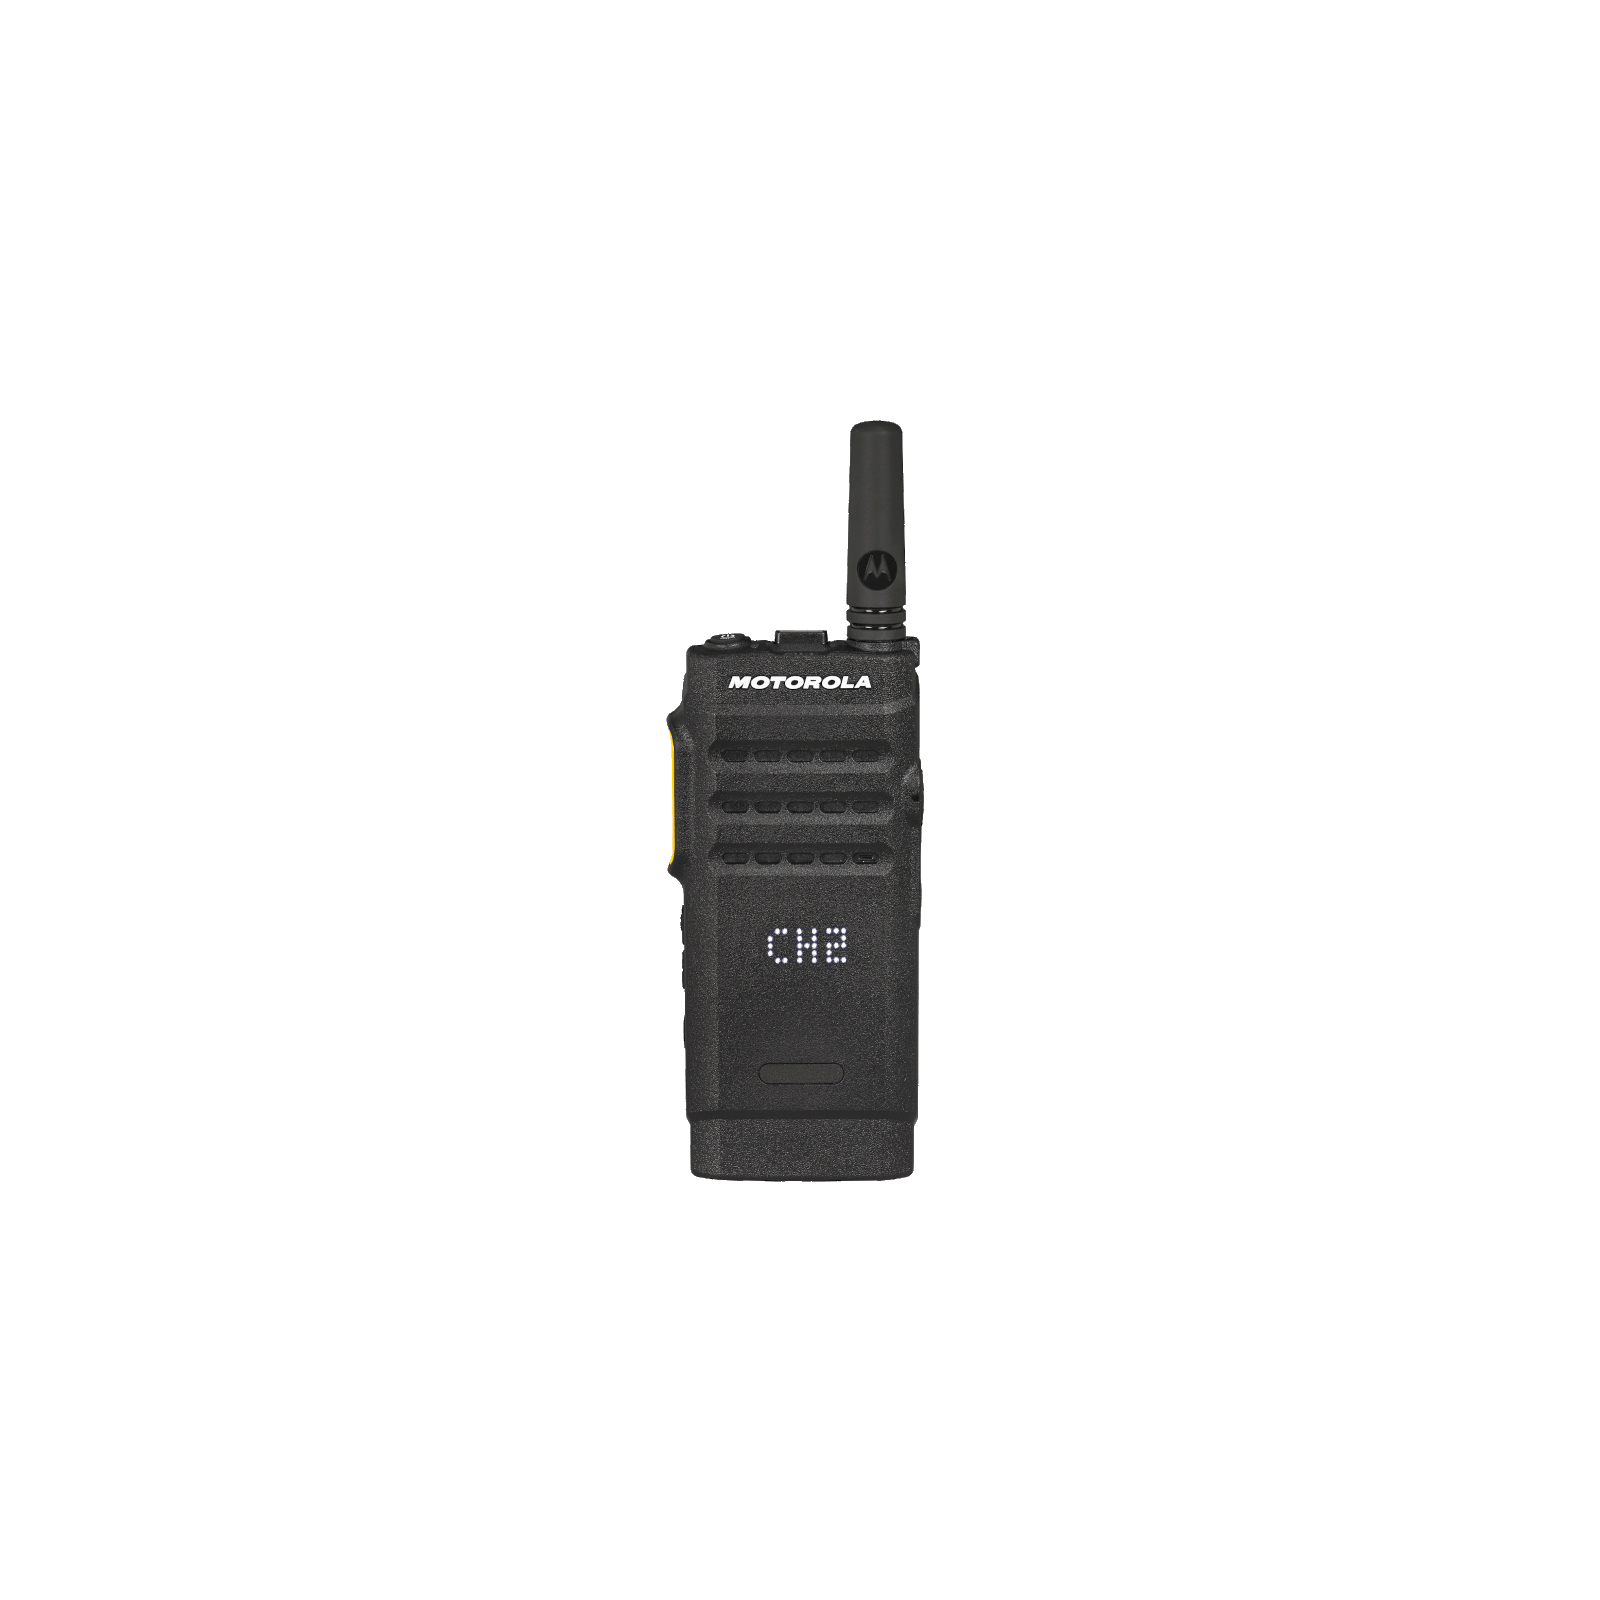 Портативная рация Motorola SL1600 VHF DISPLAY PTO302D 2300T изображение 2